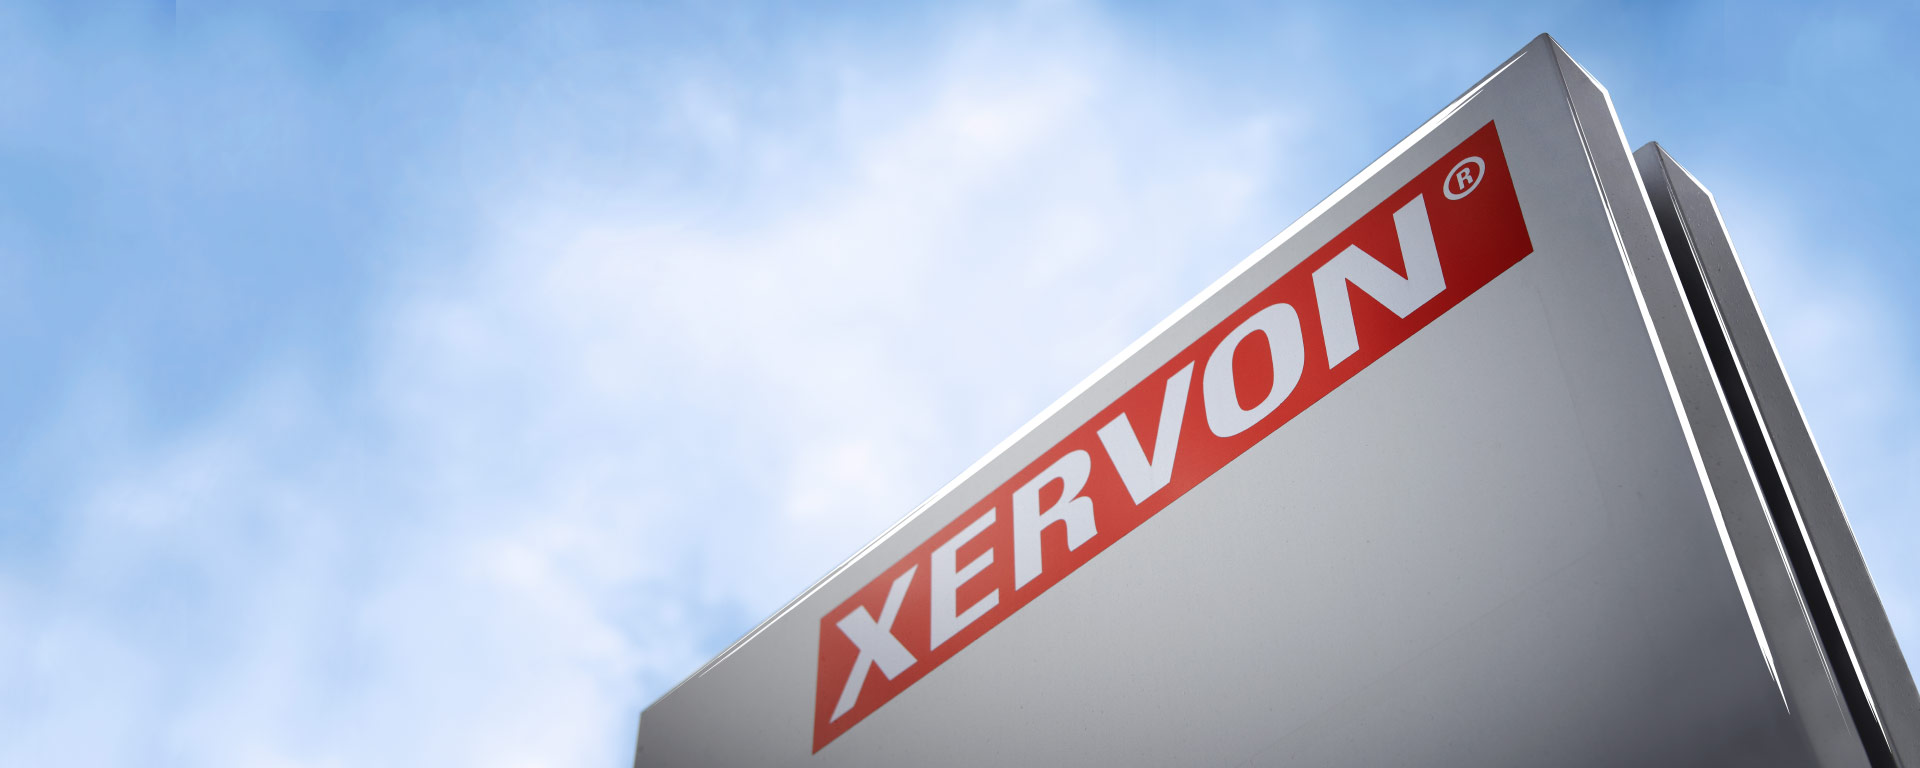 XERVON-Logo an einem Gebäude